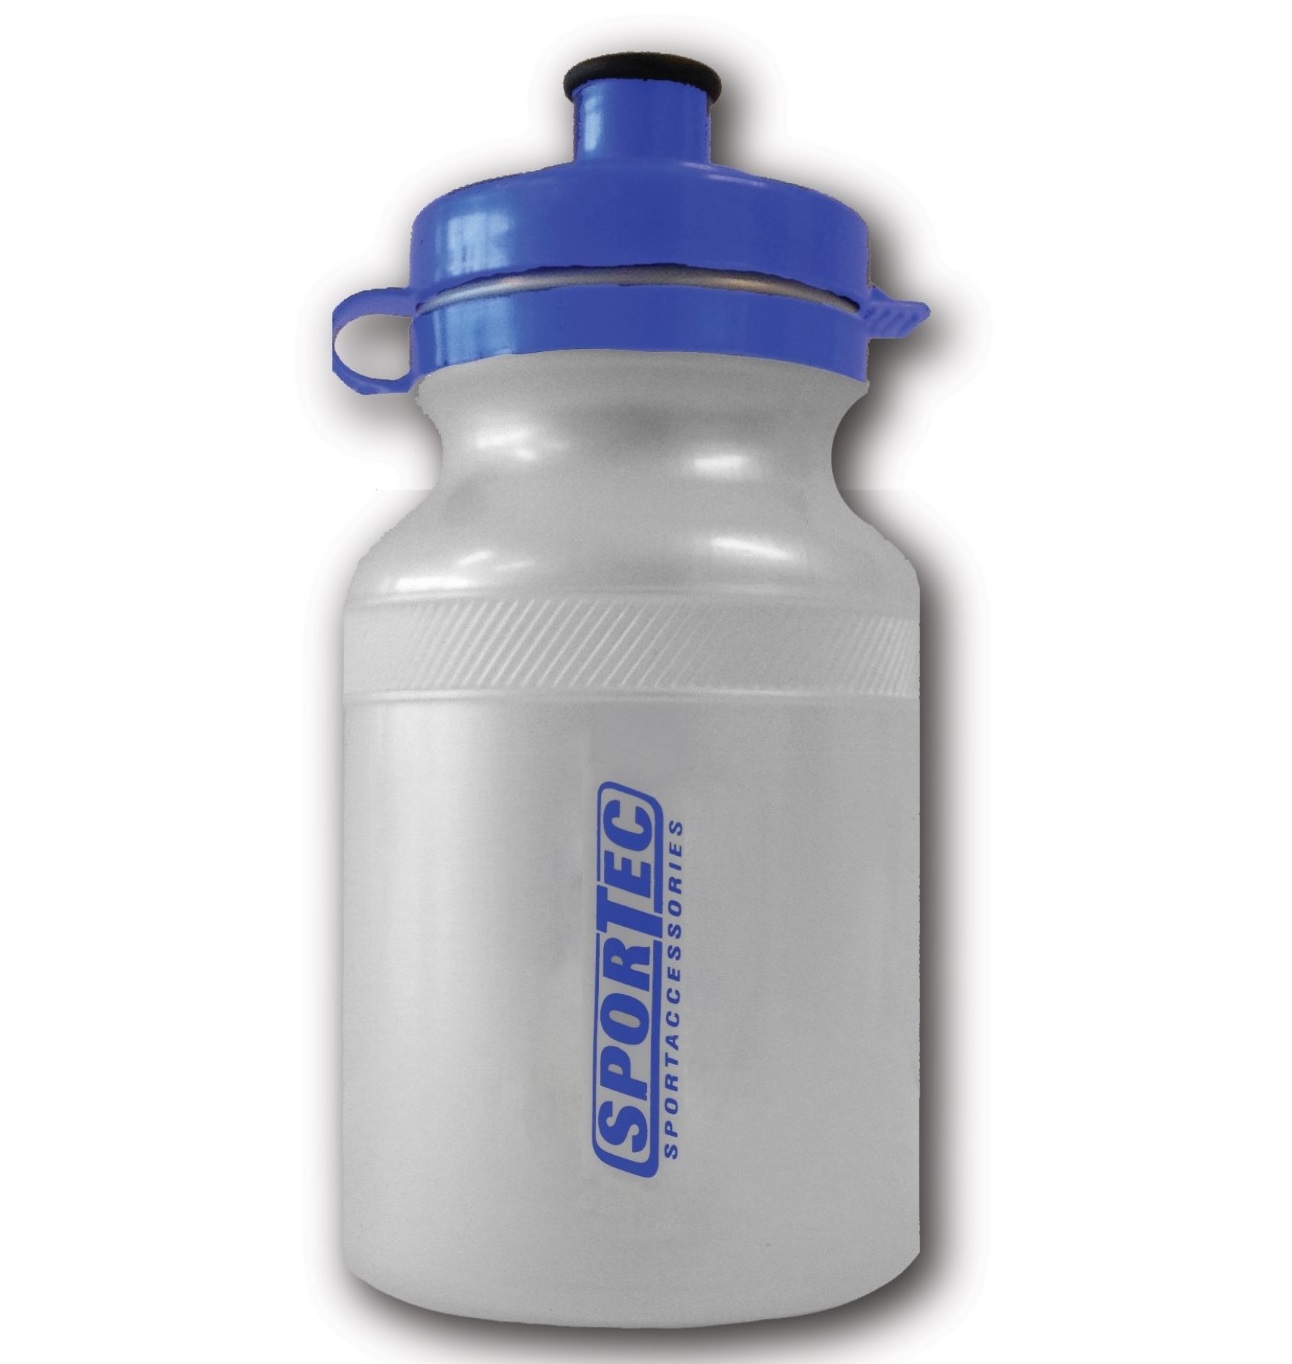 Sportec pearl bidon met blauwe dop - 0.3 liter